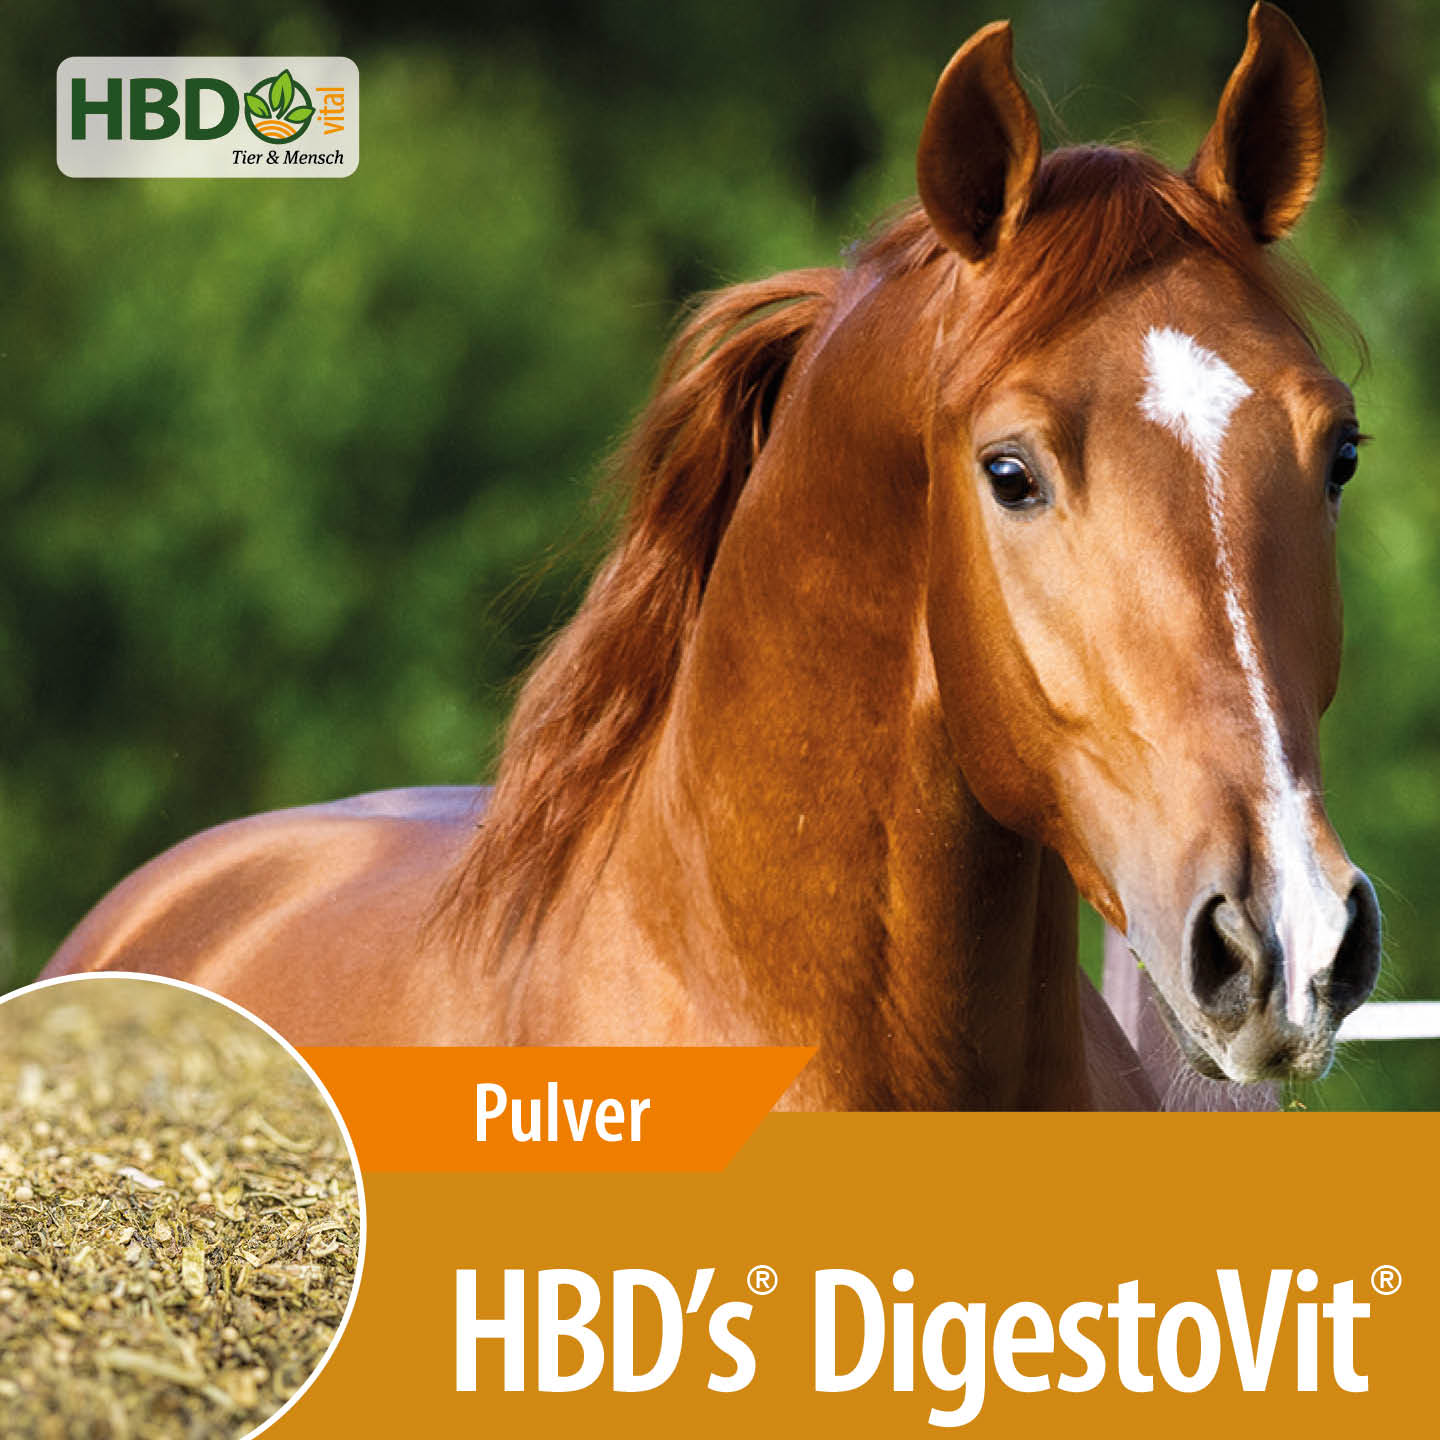 Shopbild für HBD's DigestoVit für Pferde- Das Bild zeigt den Produktnamen sowie den Hinweis, dass es sich um ein Pulver handelt. Ein braunes Pferd ist zu sehen, was das Produkt visuell ansprechend präsentiert und seine Verwendung für Pfer